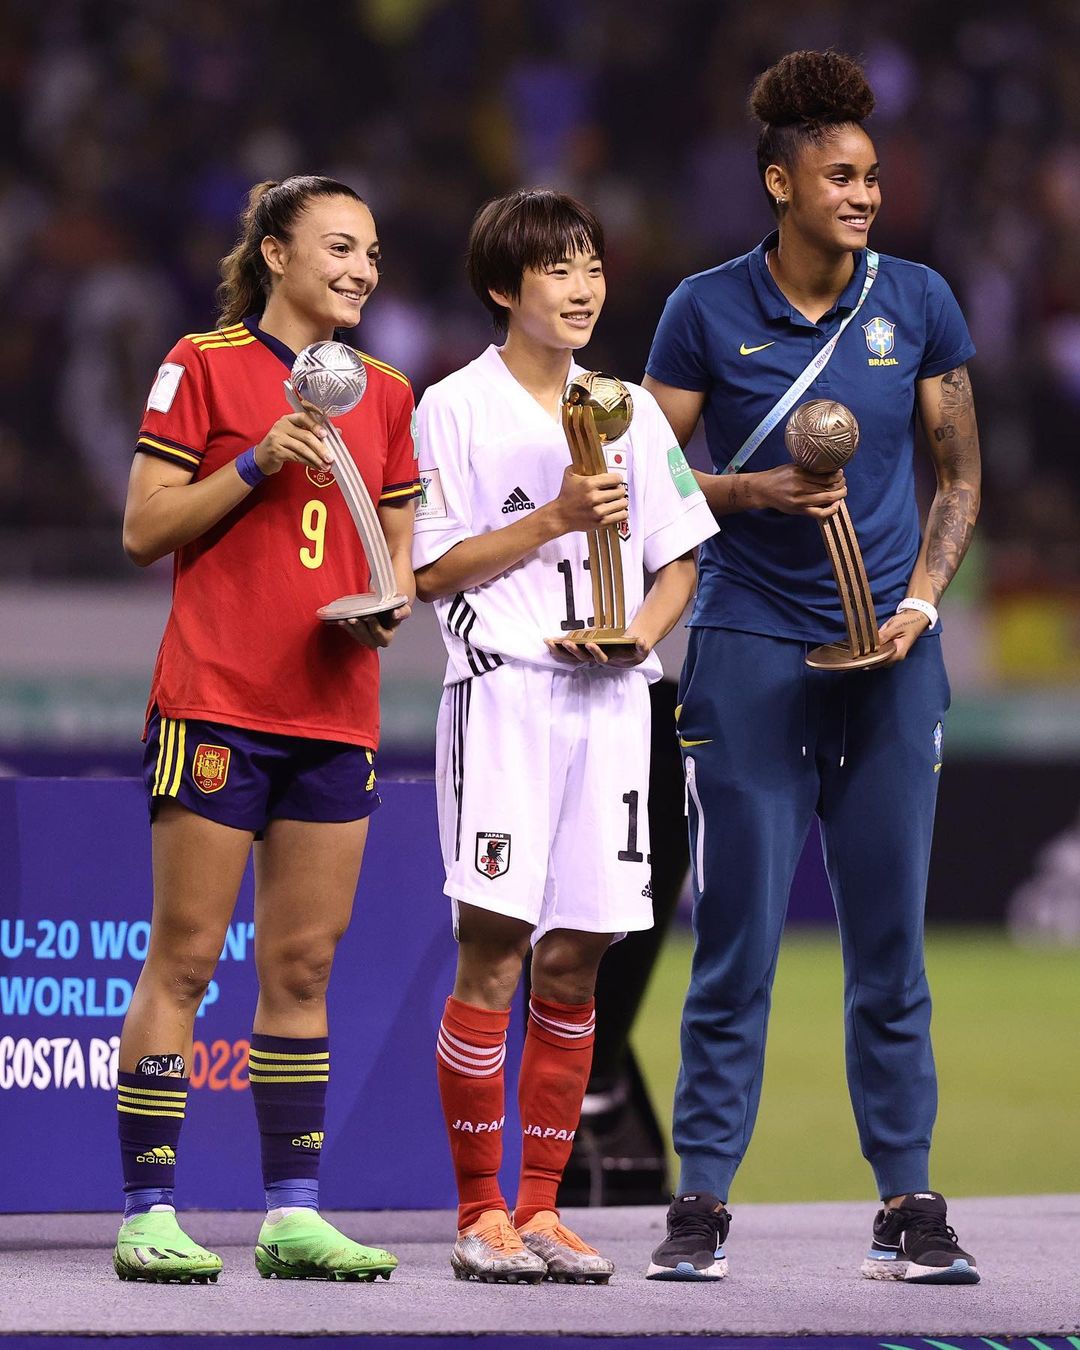 Meilleures joueuses : Inma Gabarro (Espagne) en argent, Maika Hamano (Japon) en or et Tarciane Lima (Brésil) en bronze
